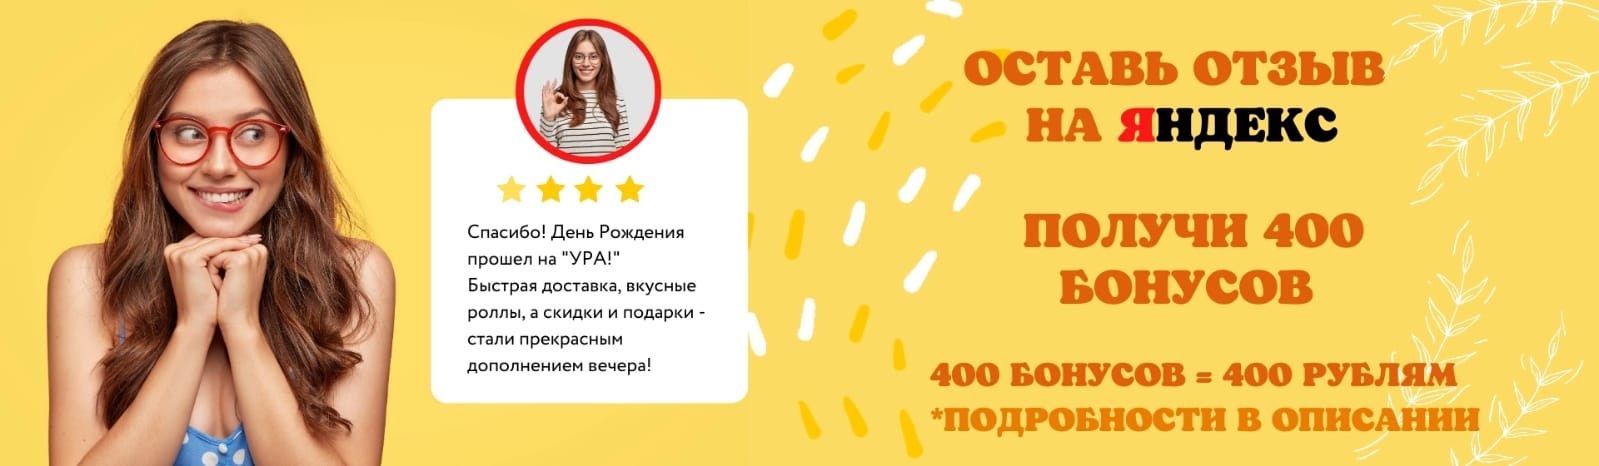 Дарим 400 бонусов за отзыв в Яндексе